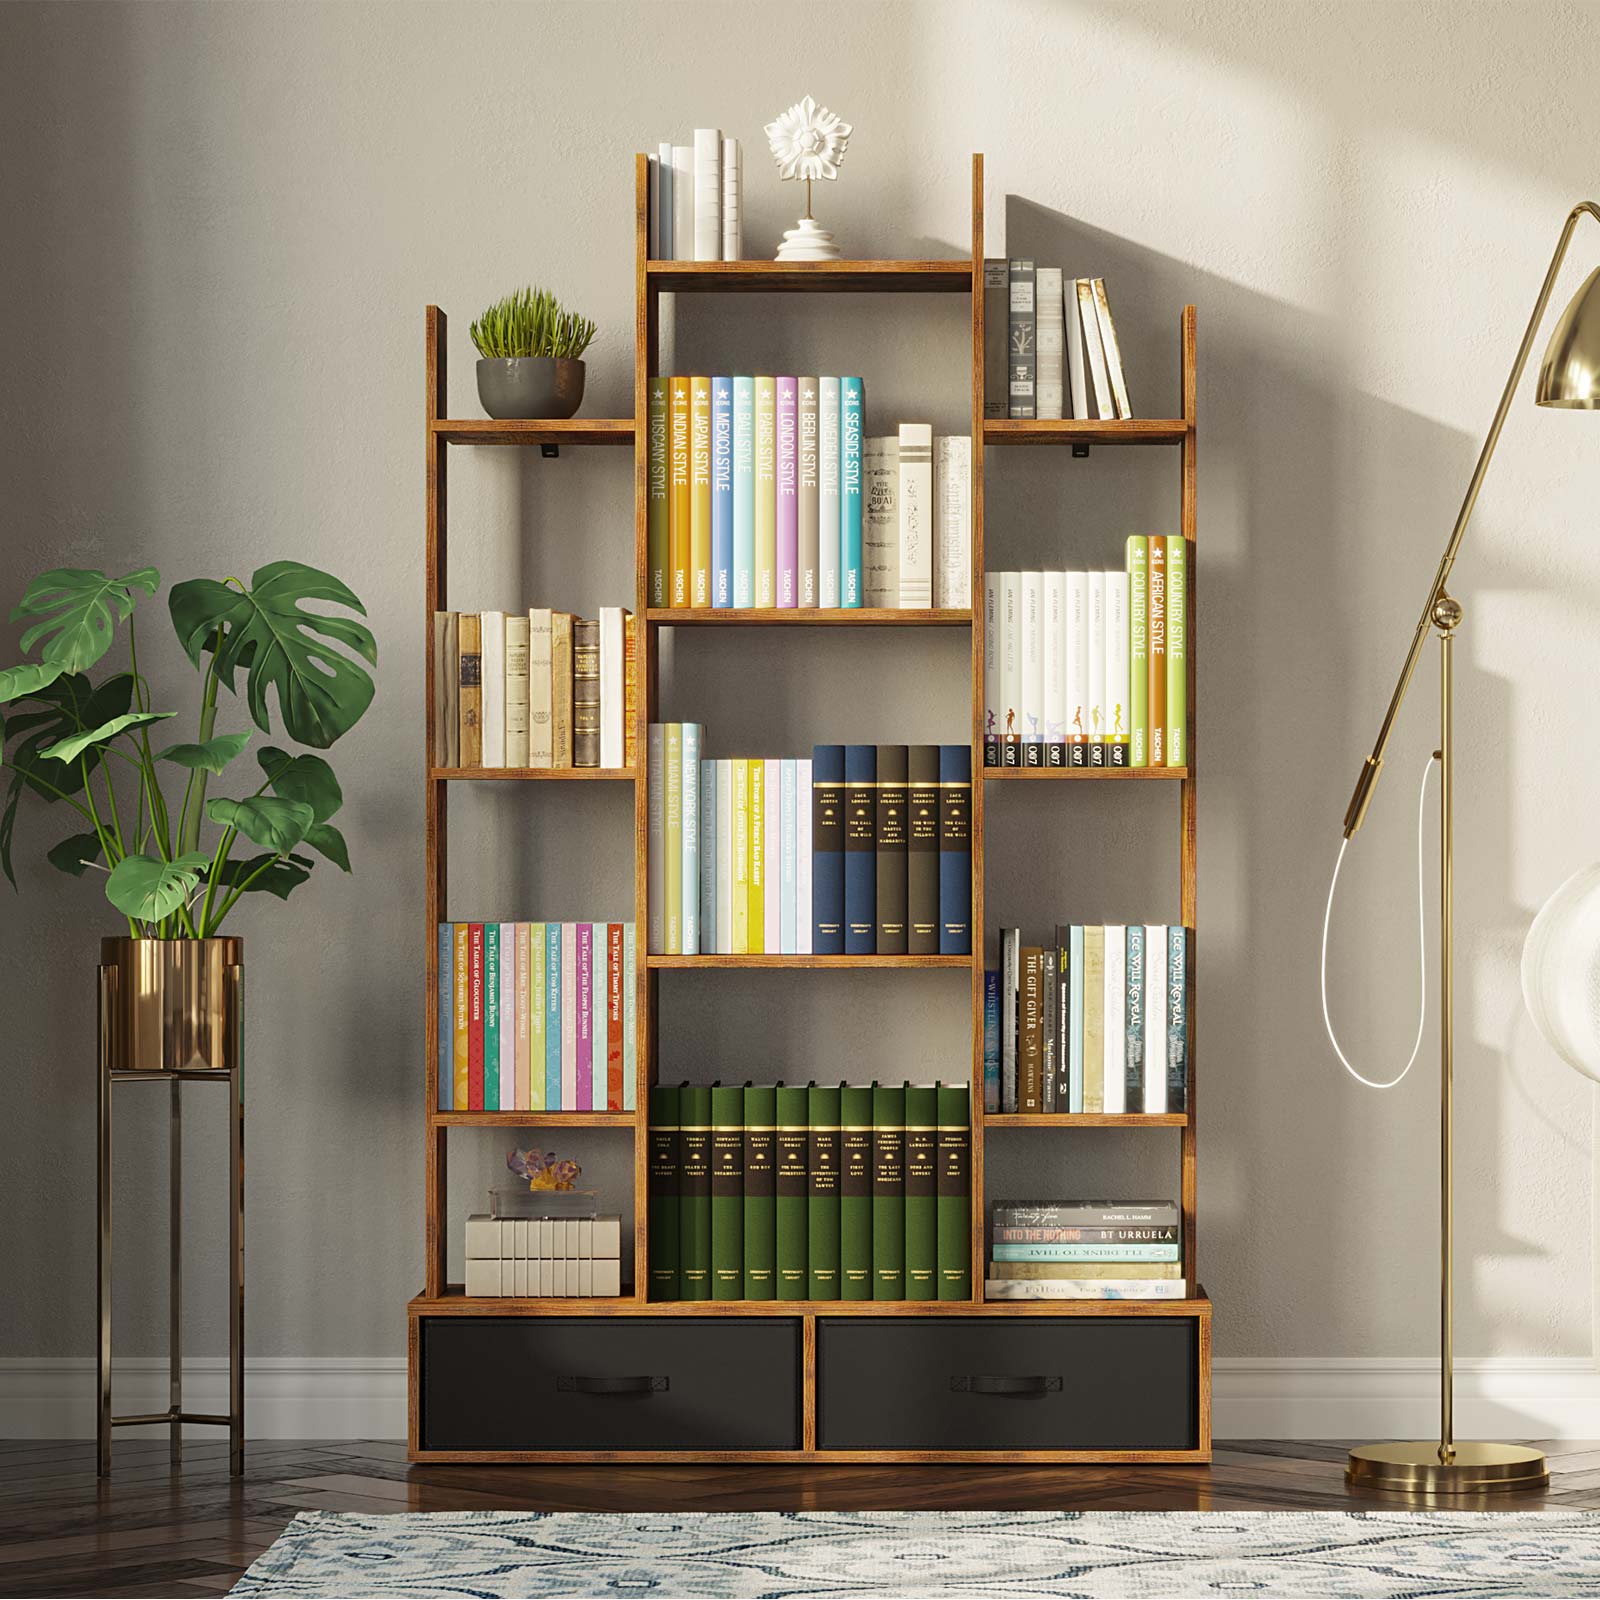 two bookshelves